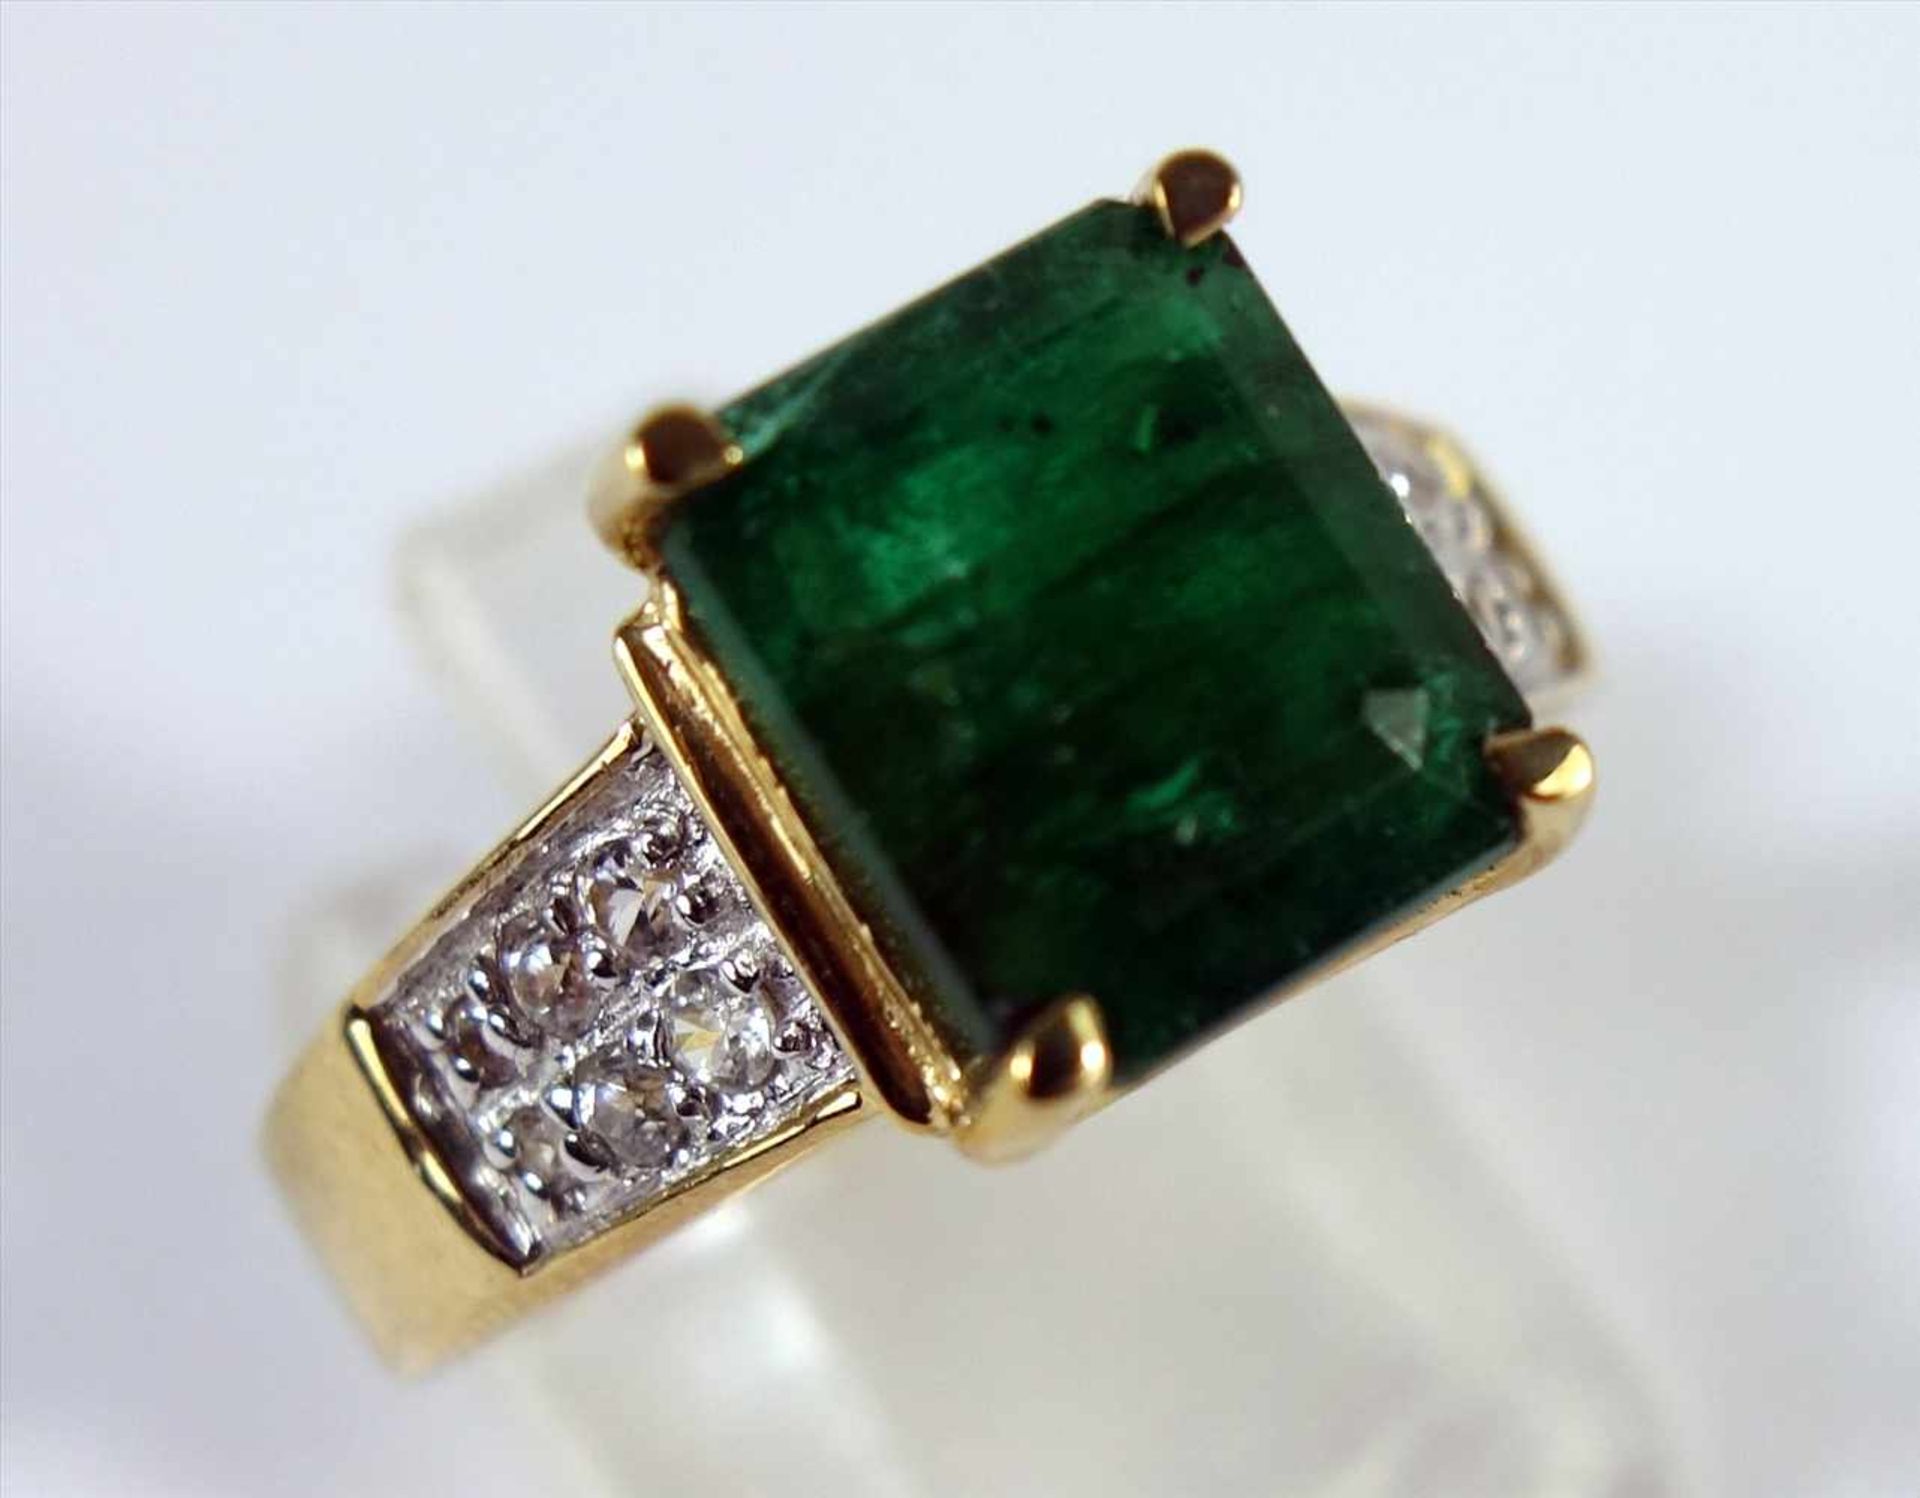 Socoto-Smaragd-Ring, 375er Gold, mit Echtheitszertifikat, Gesamt-Gew.6,12g, brasilianischer